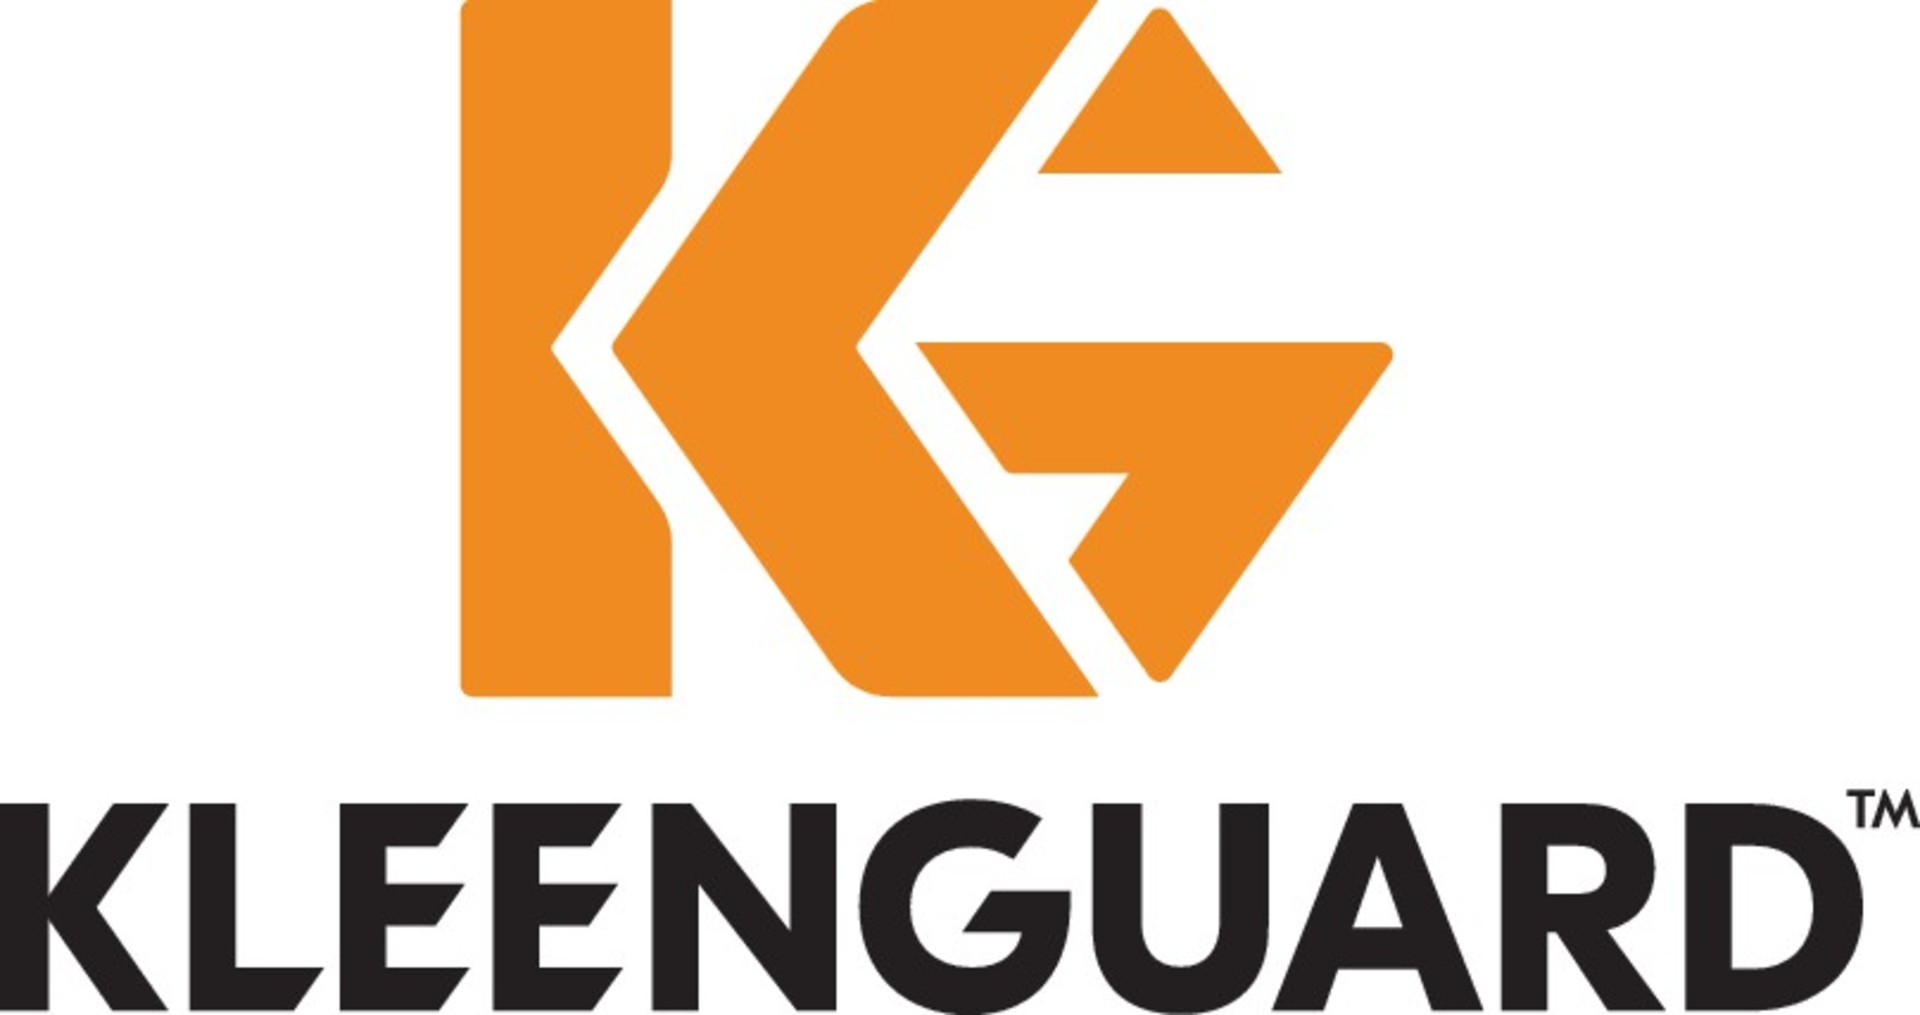 Kimberly-Clark logo